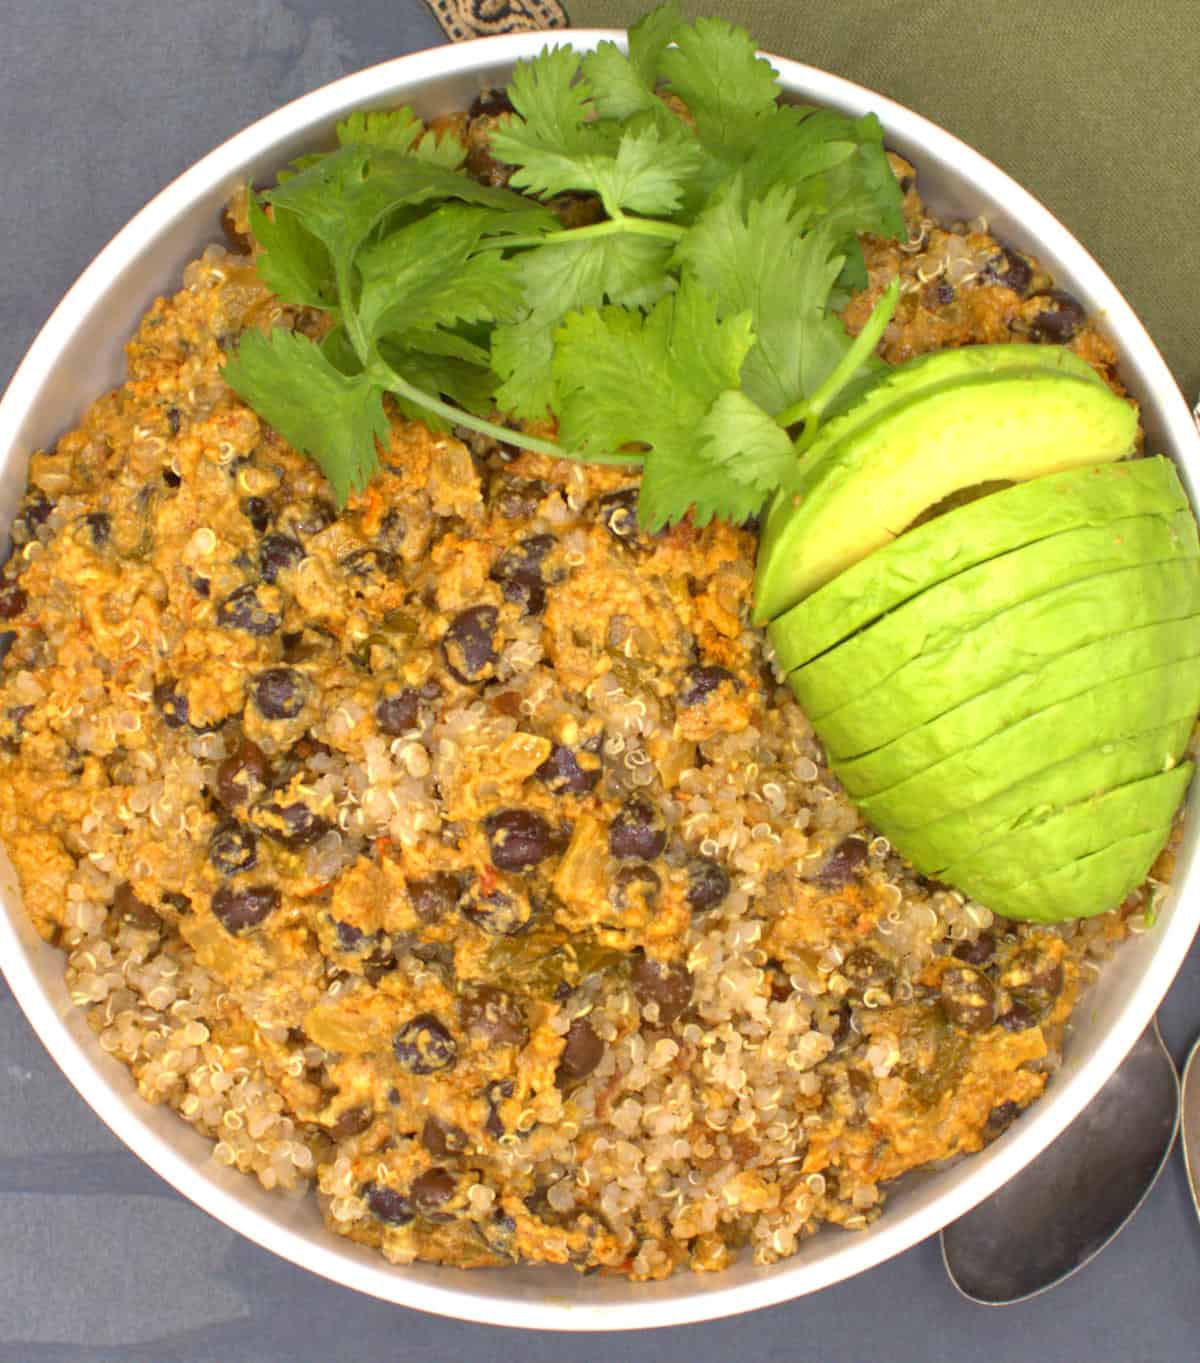 Quinoa biryani in bowl with avocado and cilantro.